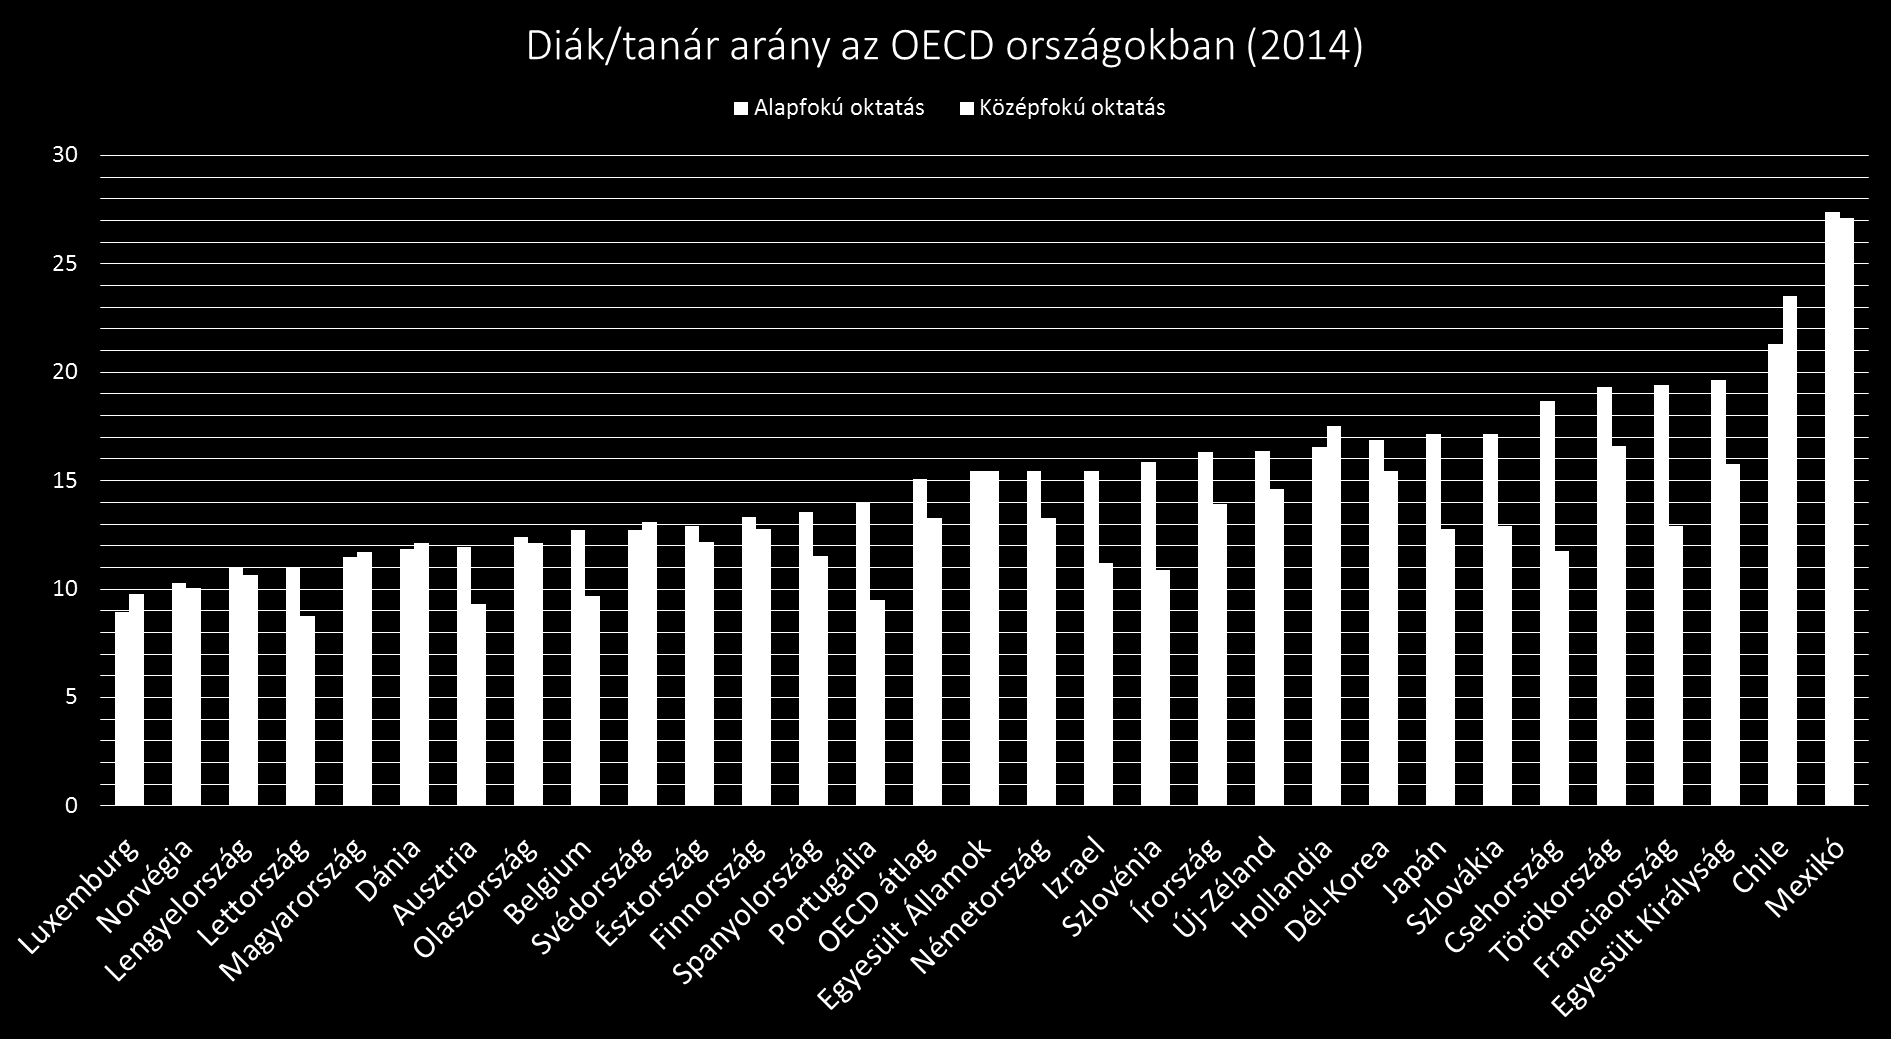 Tanár/diák arány OECD összehasonlításban